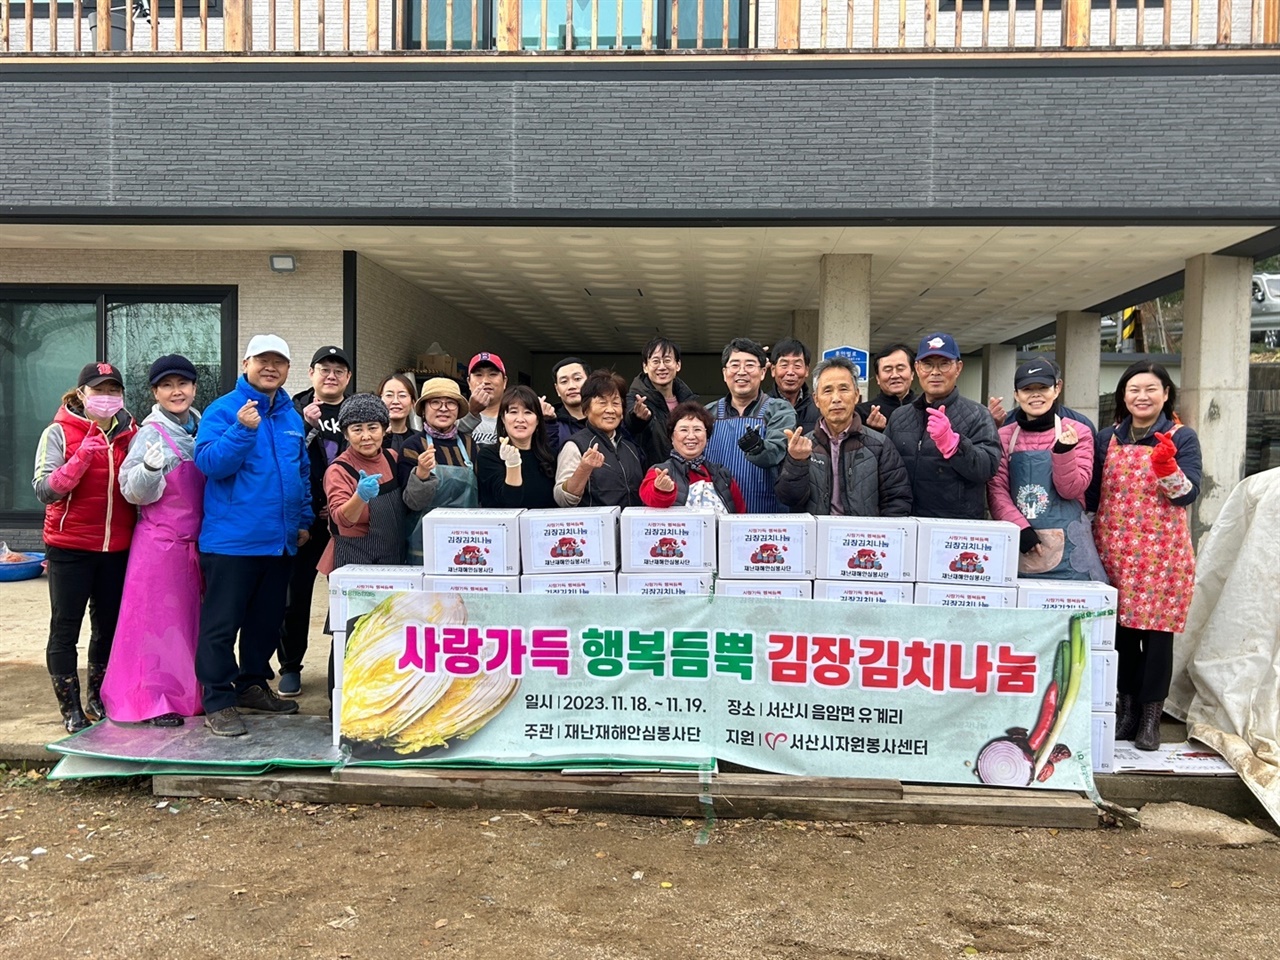 19일, 재해재난안심봉사단은 2일째 김장봉사를 하면서, 10kg 기준 30박스를 한 단체에 기부했다. 